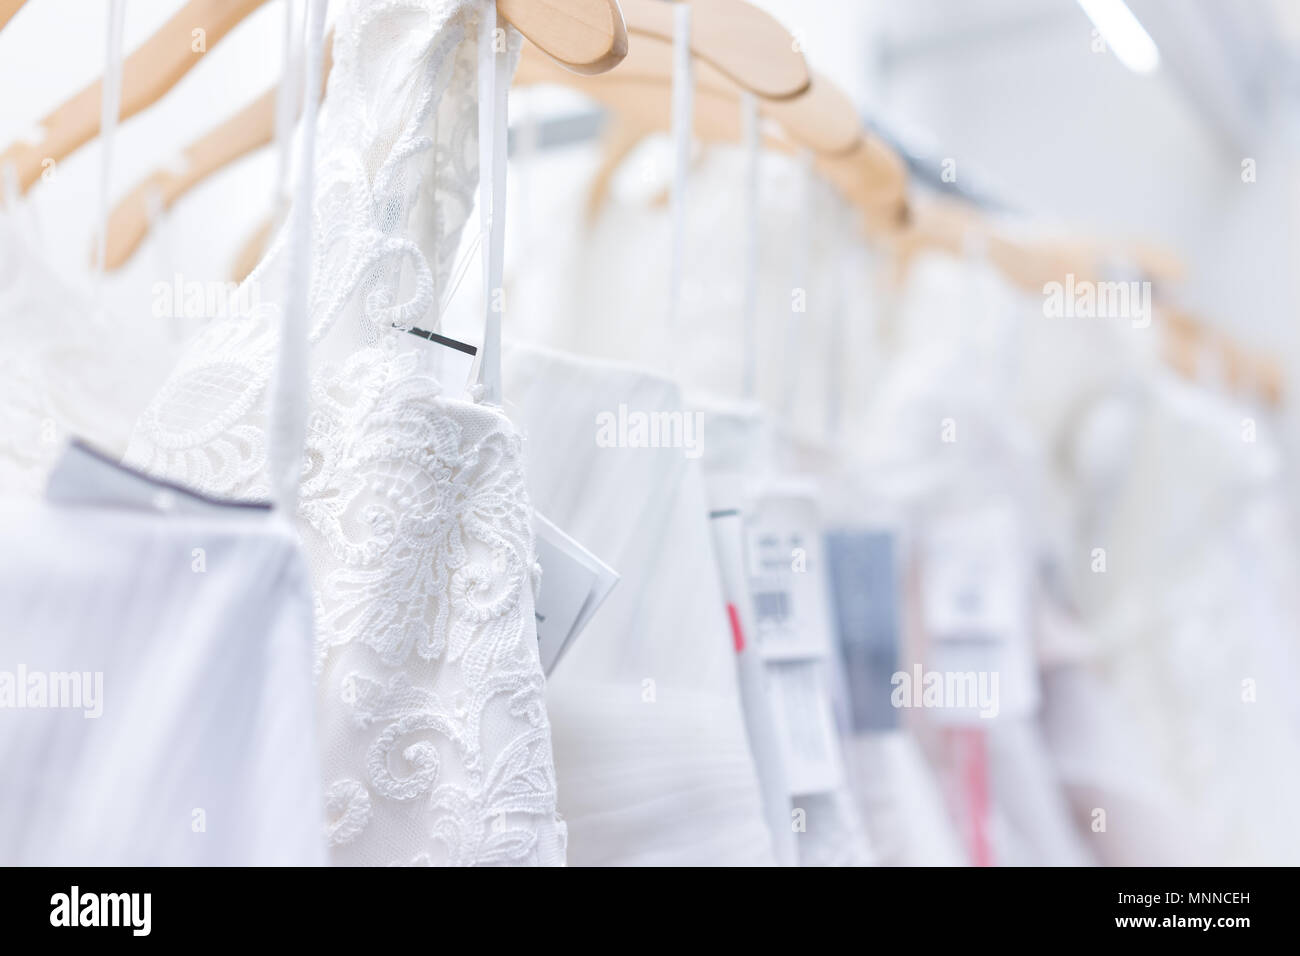 Viele Brautkleider mit Preisschildern in Boutique Diskontgeschäft, weiße Kleider hängen an Rack Kleiderbügel Reihe Nahaufnahme mit weißer Spitze, Tüll, Design Stockfoto